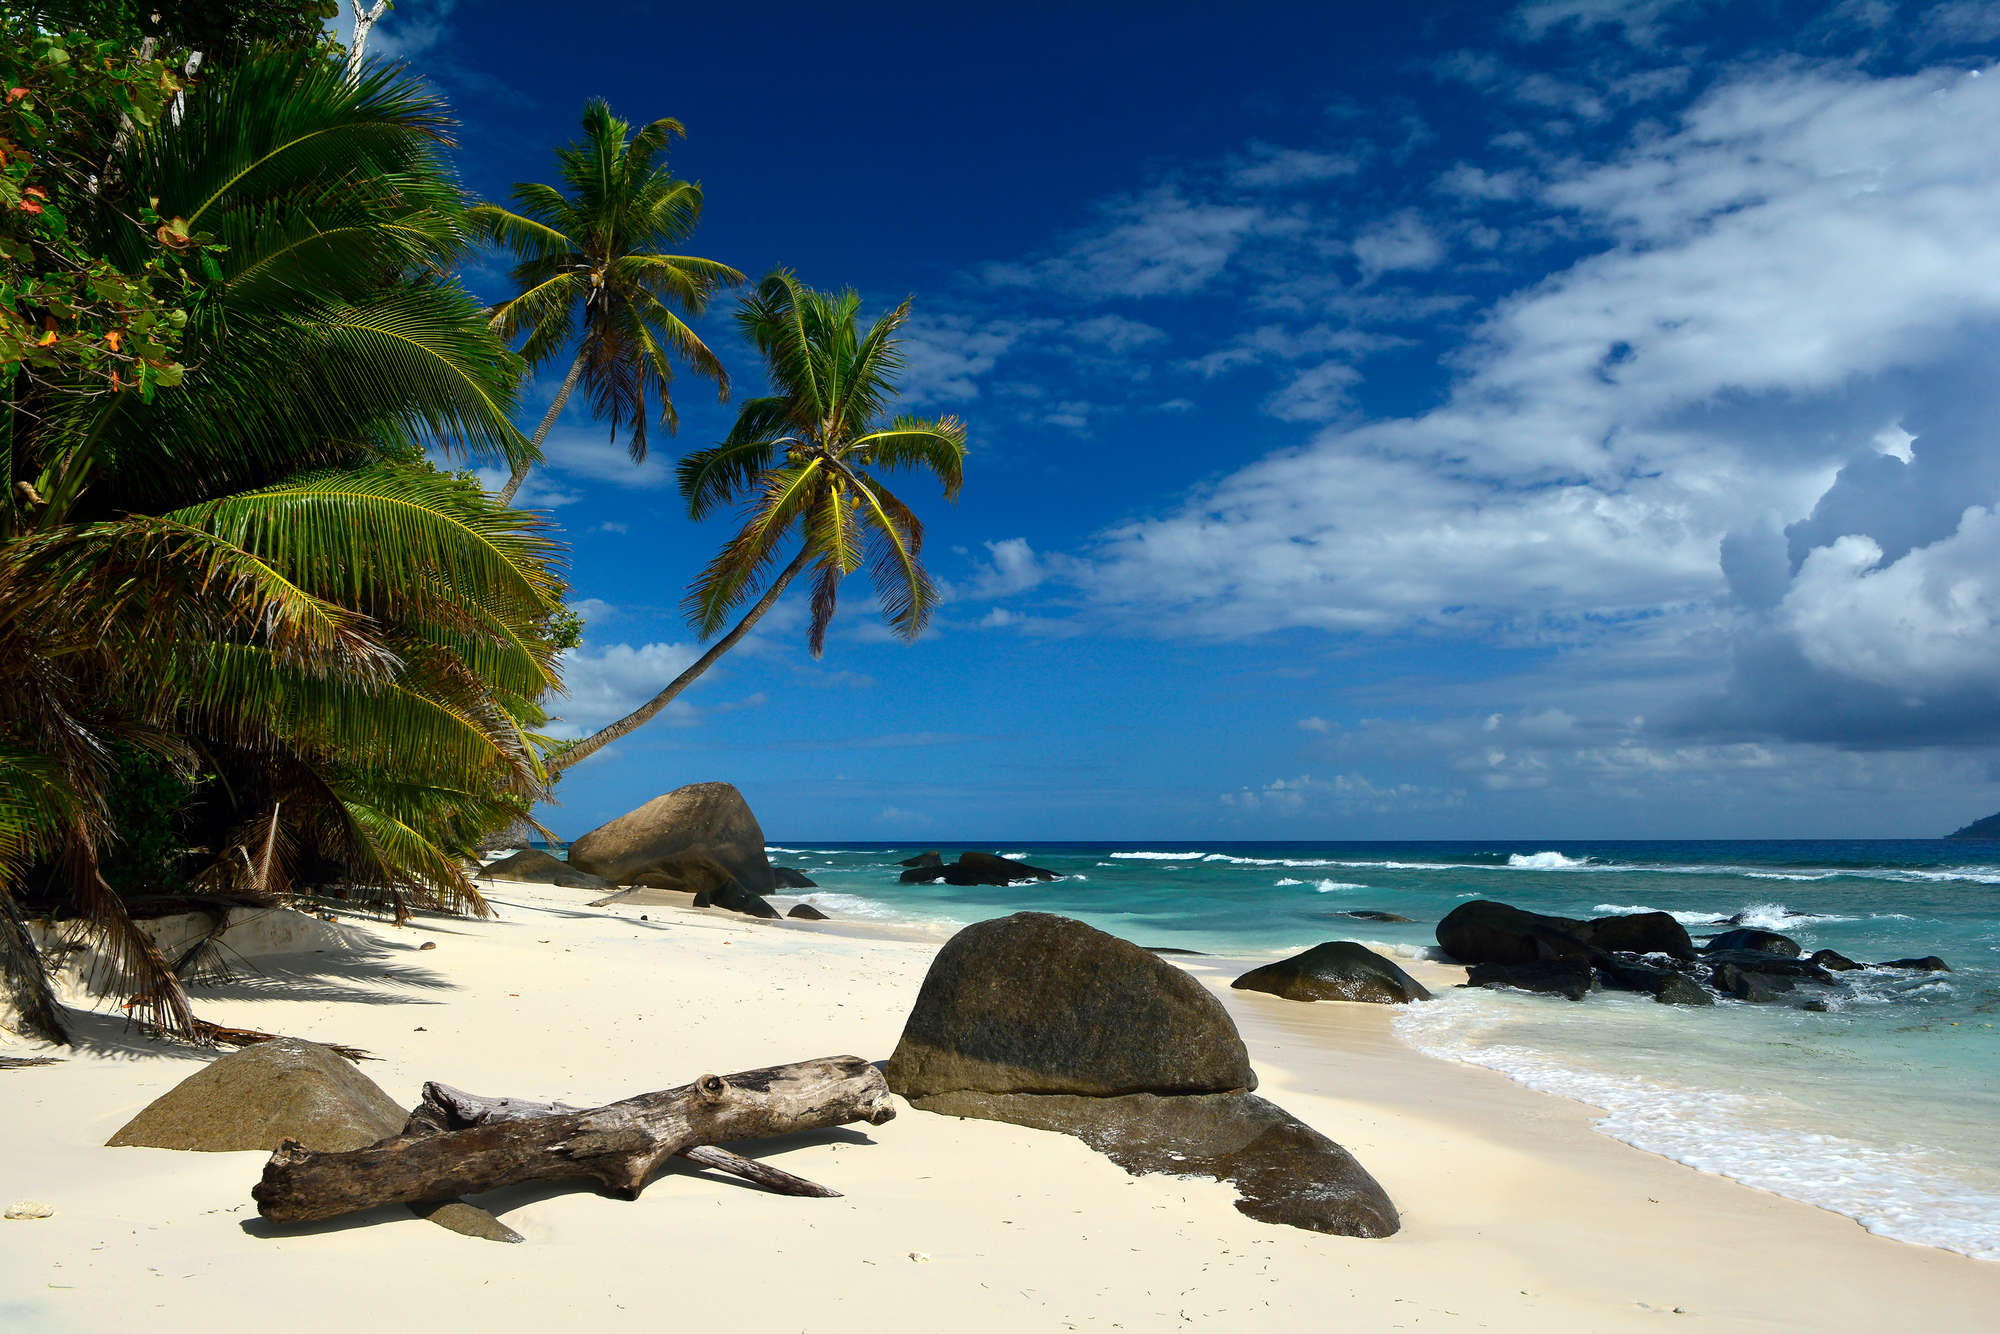             Papel Pintado Mares del Sur Seychelles Palmeras y Playa sobre tejido no tejido liso mate
        